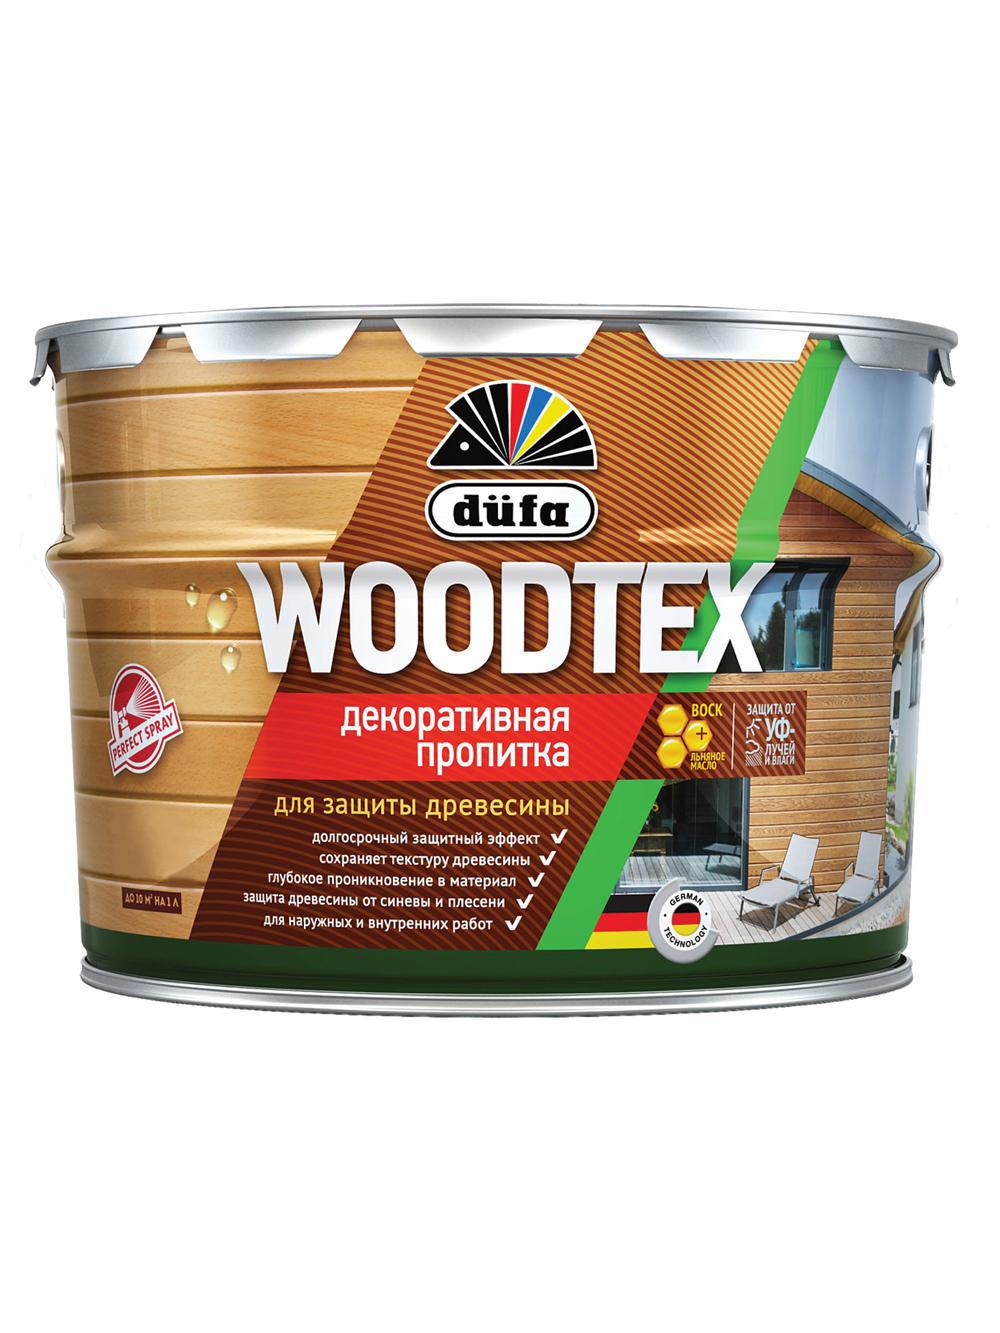 90194559 Пропитка декоративная для защиты древесины алкидная Woodtex орегон 3 л STLM-0128490 DUFA